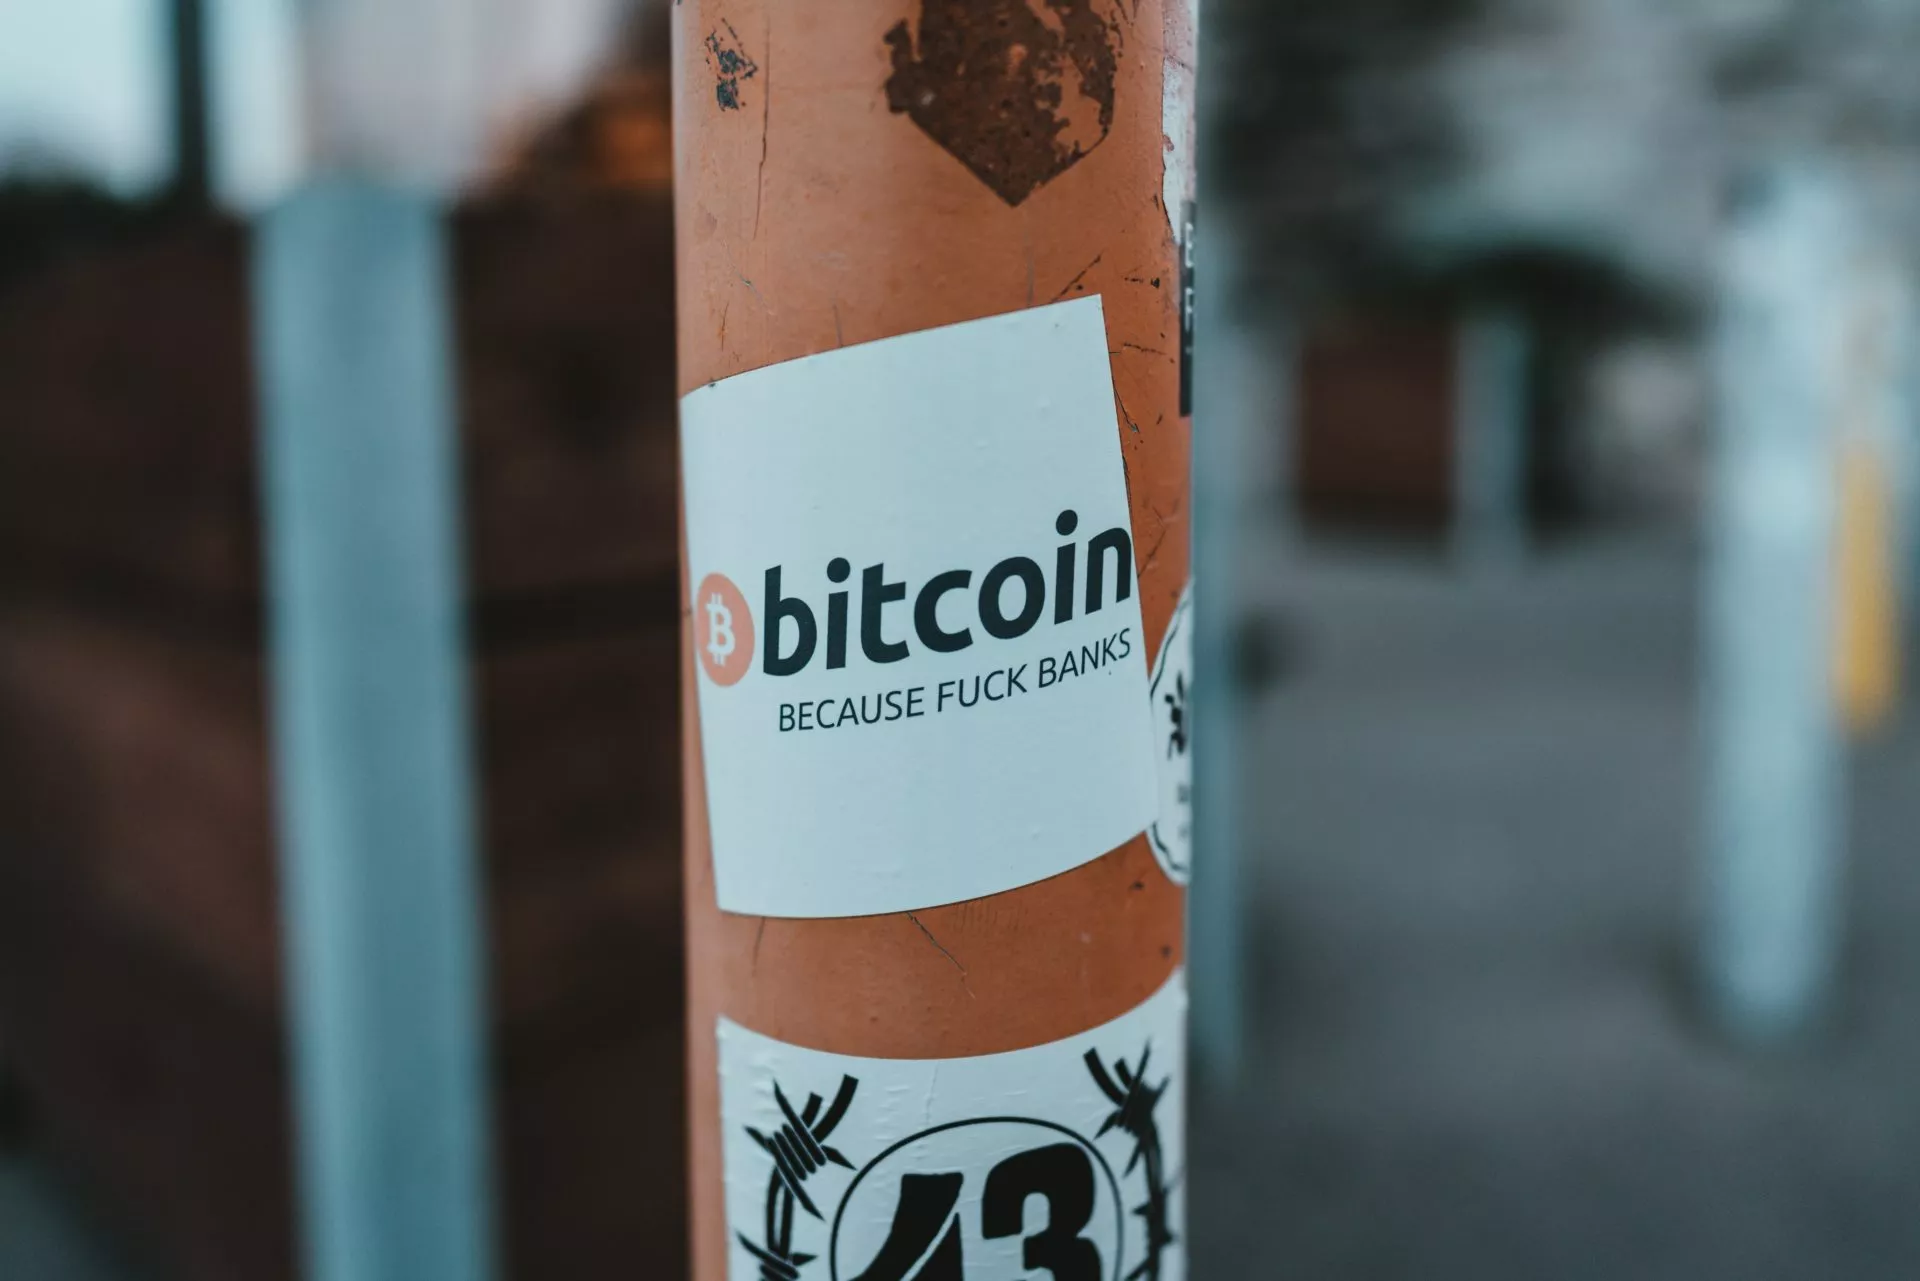 BitMEX CEO voorspelt dat Bitcoin rond 2022 in 5 landen wettig betaalmiddel zal zijn